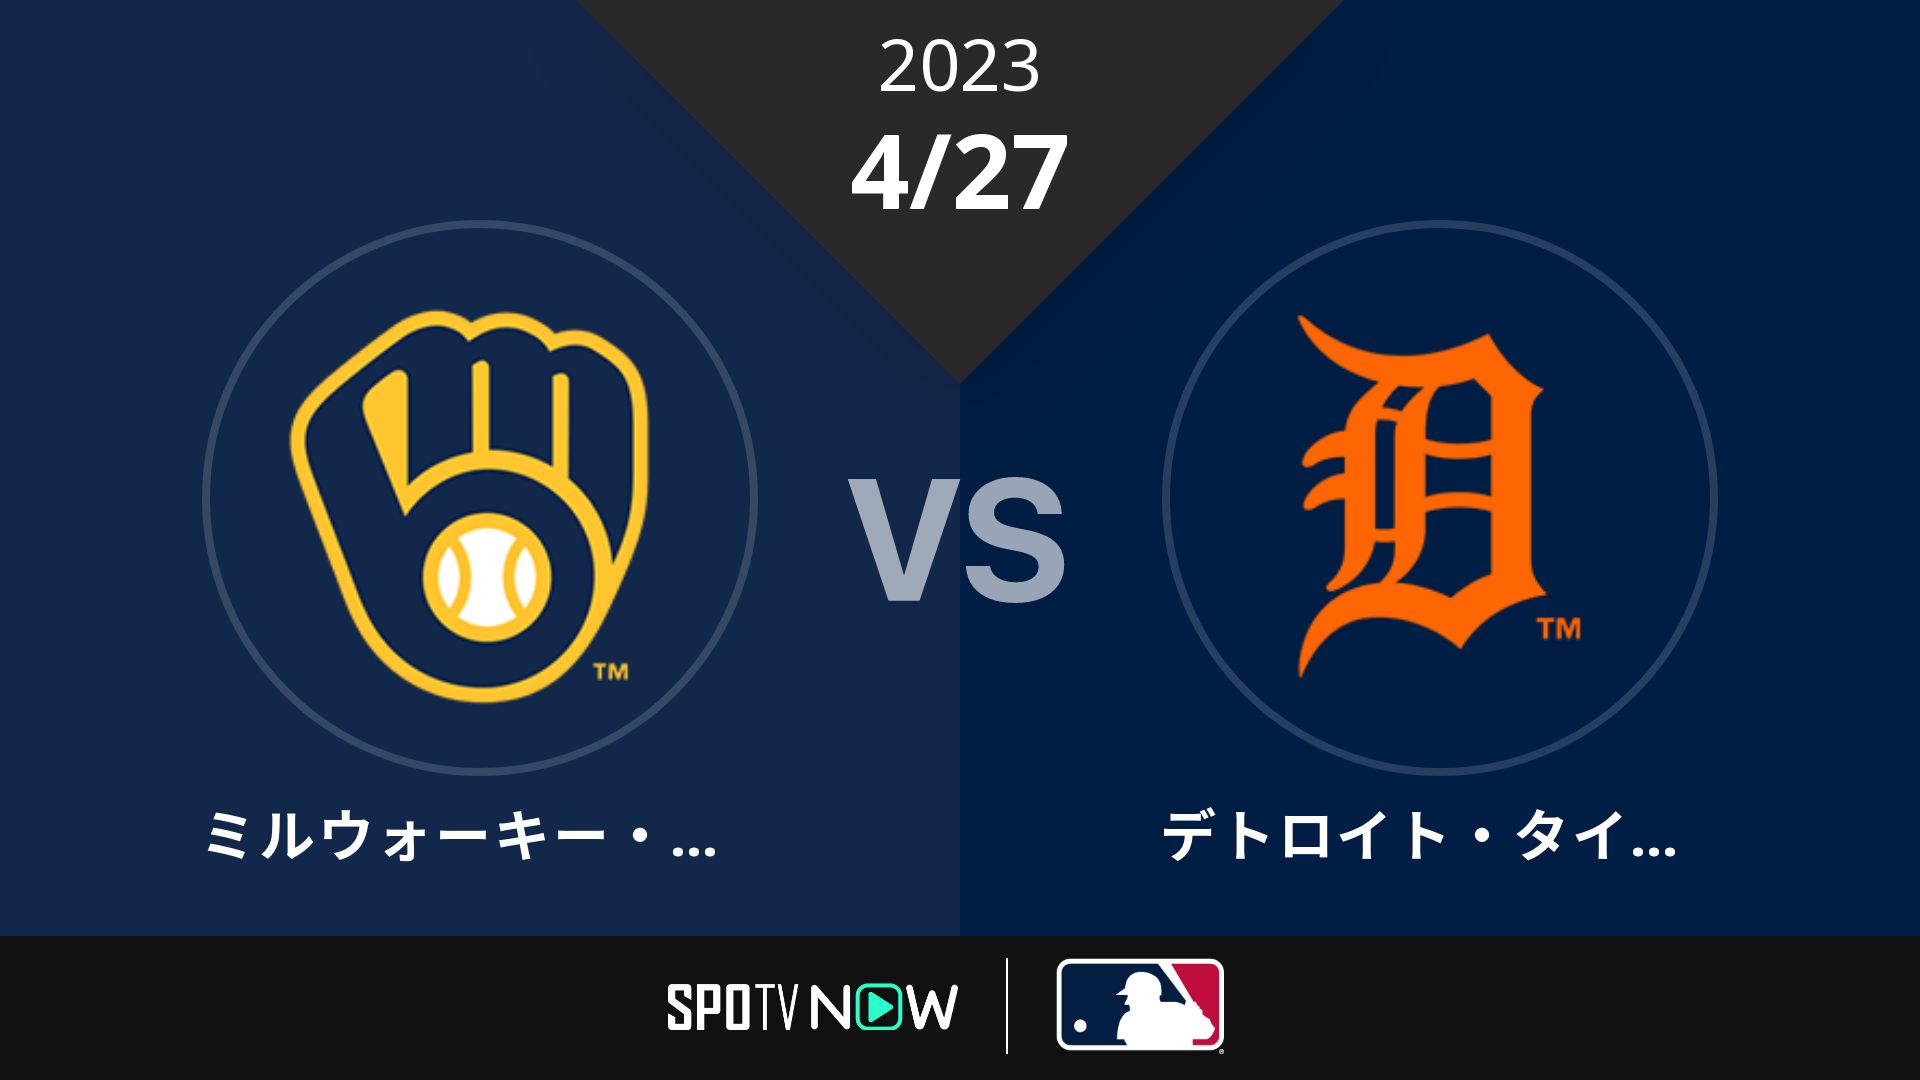 2023/4/27 ブリュワーズ vs タイガース [MLB]